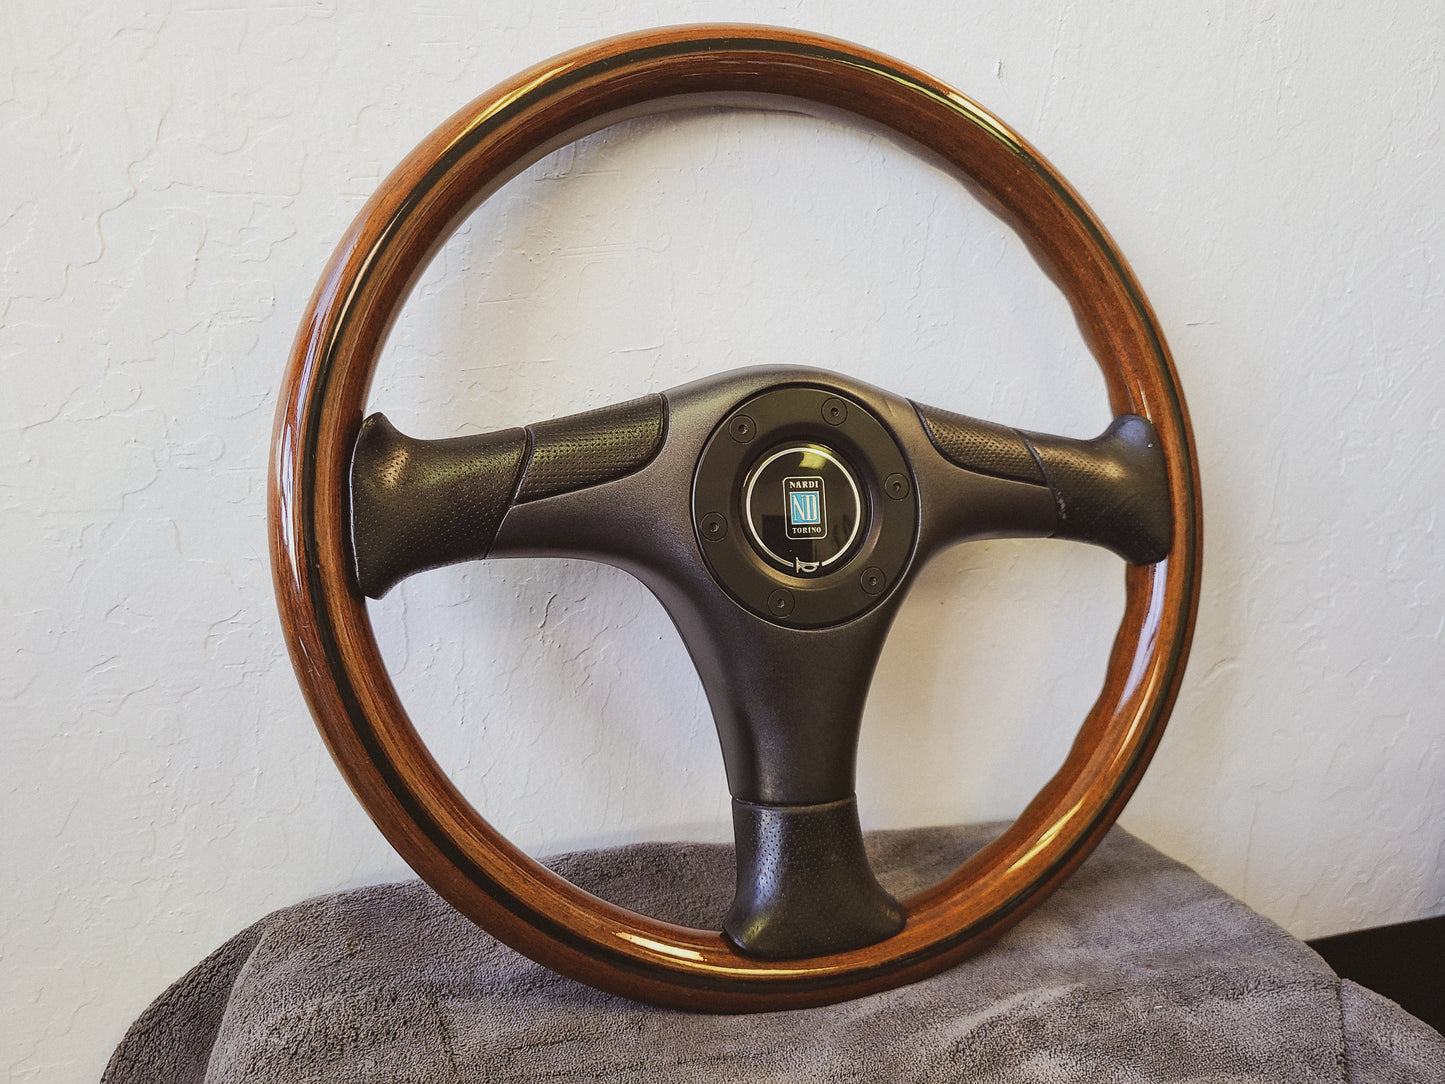 Nardi Torino 3 spoke wood steering wheel